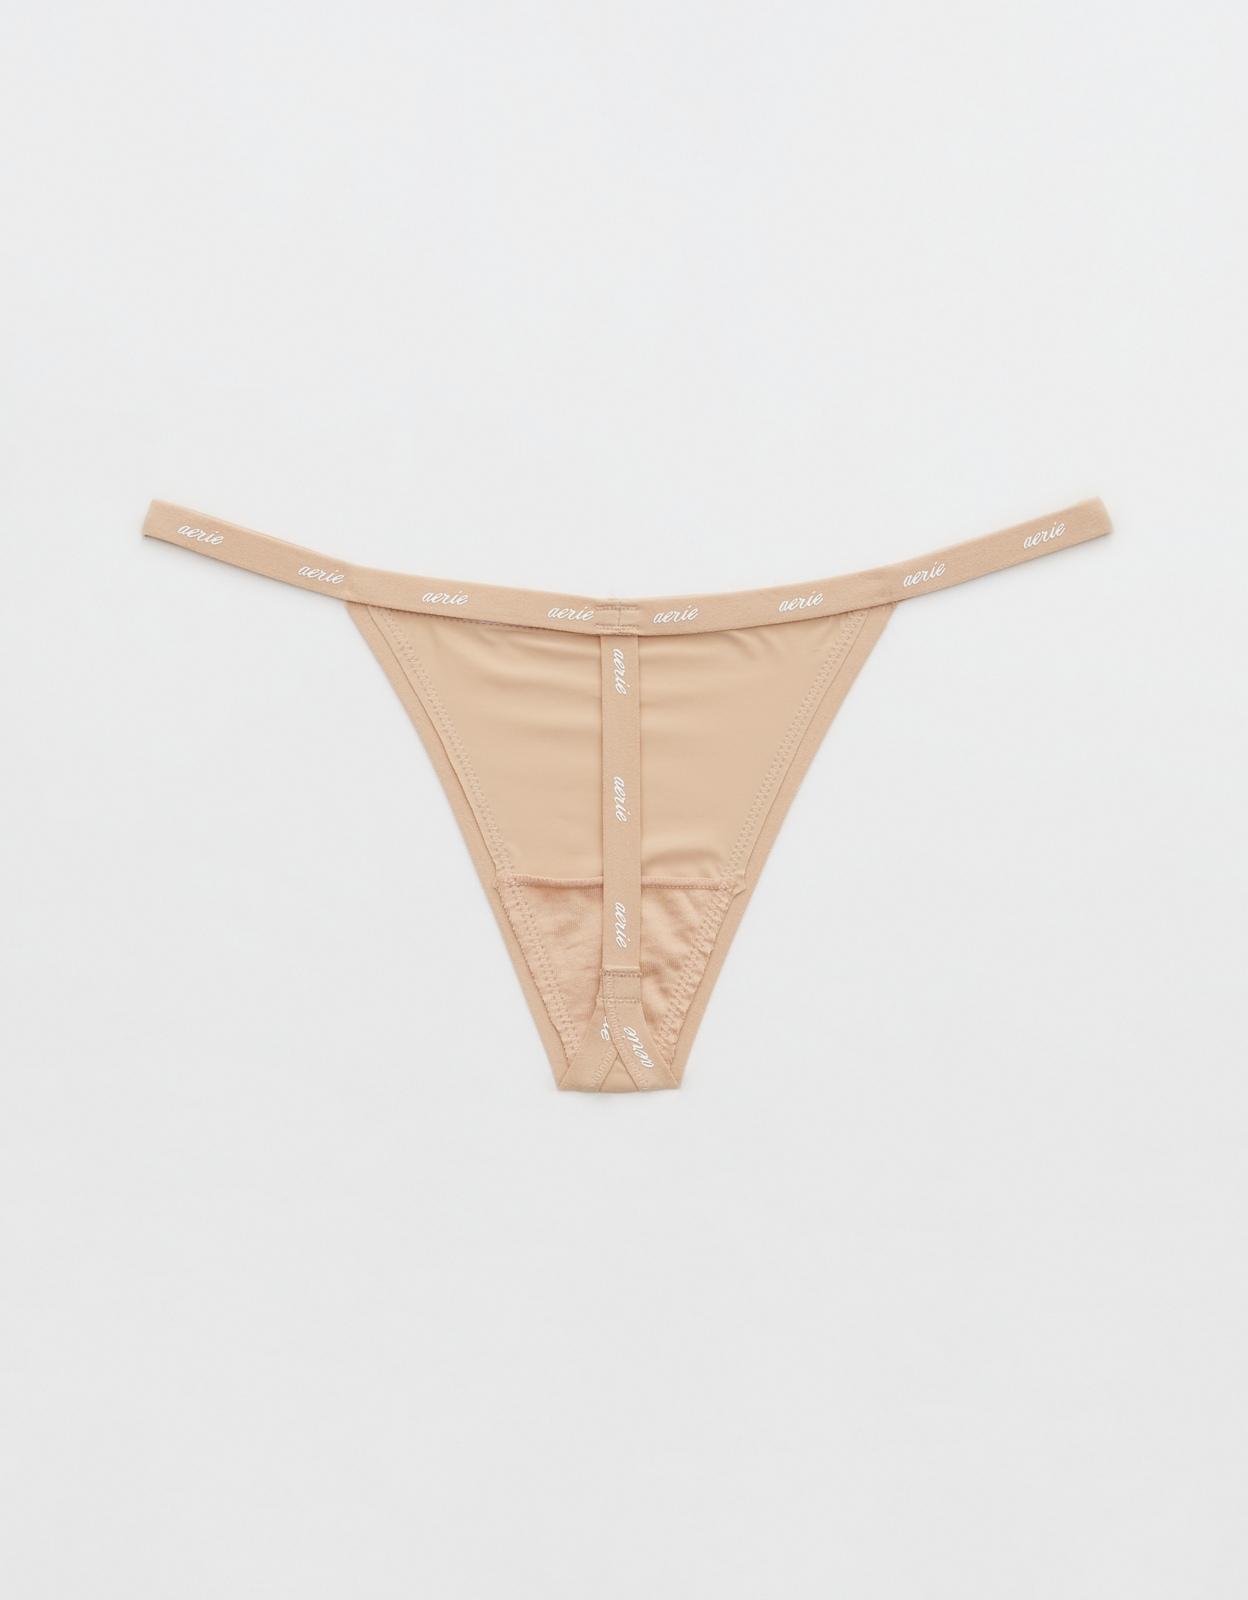 Buy Aerie Float Microfiber String Thong Underwear online